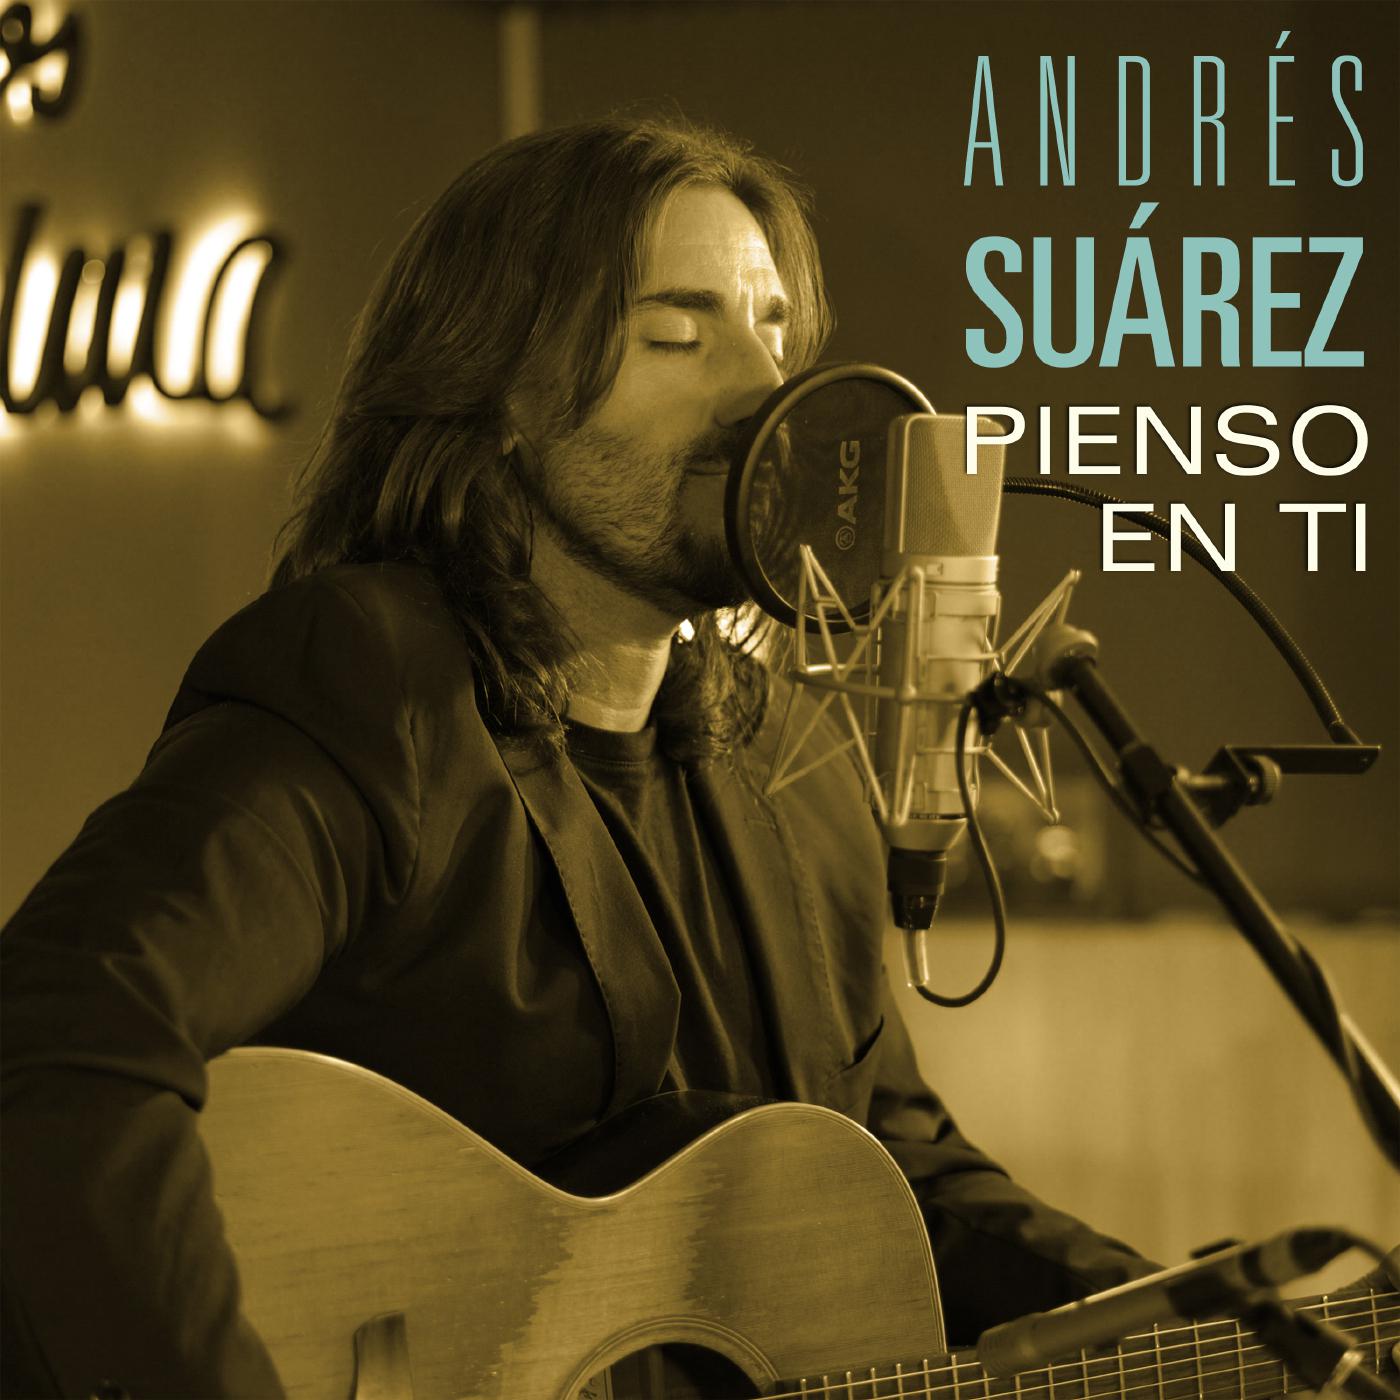 Andrés Suárez - Pienso en ti (Sesiones Moraima 2)